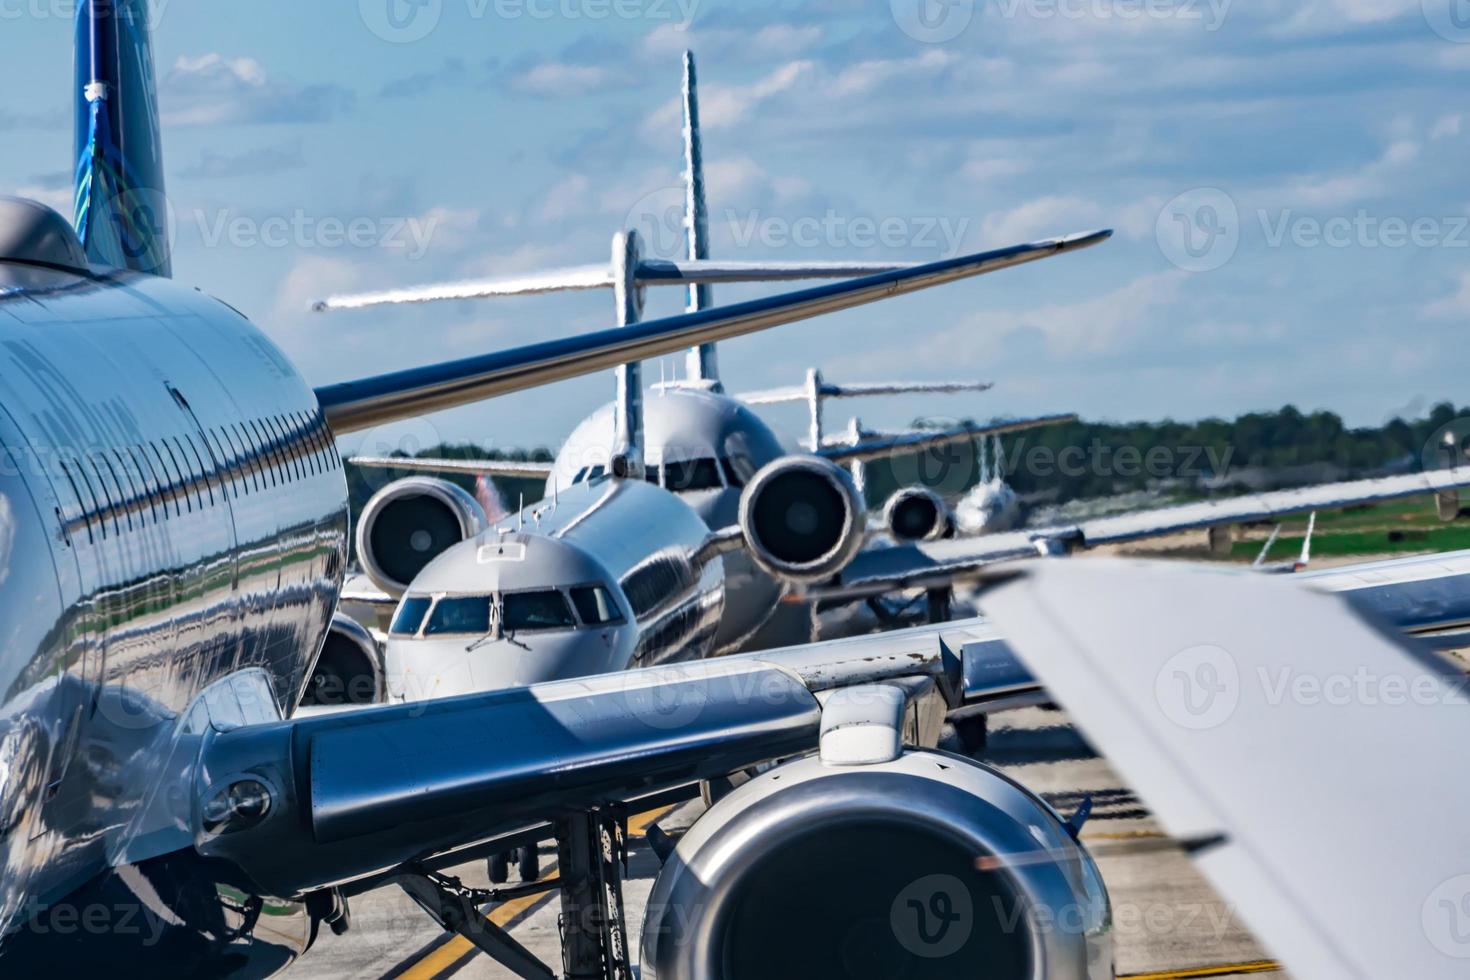 trafic dense sur le tarmac de l'aéroport avant le décollage des avions photo